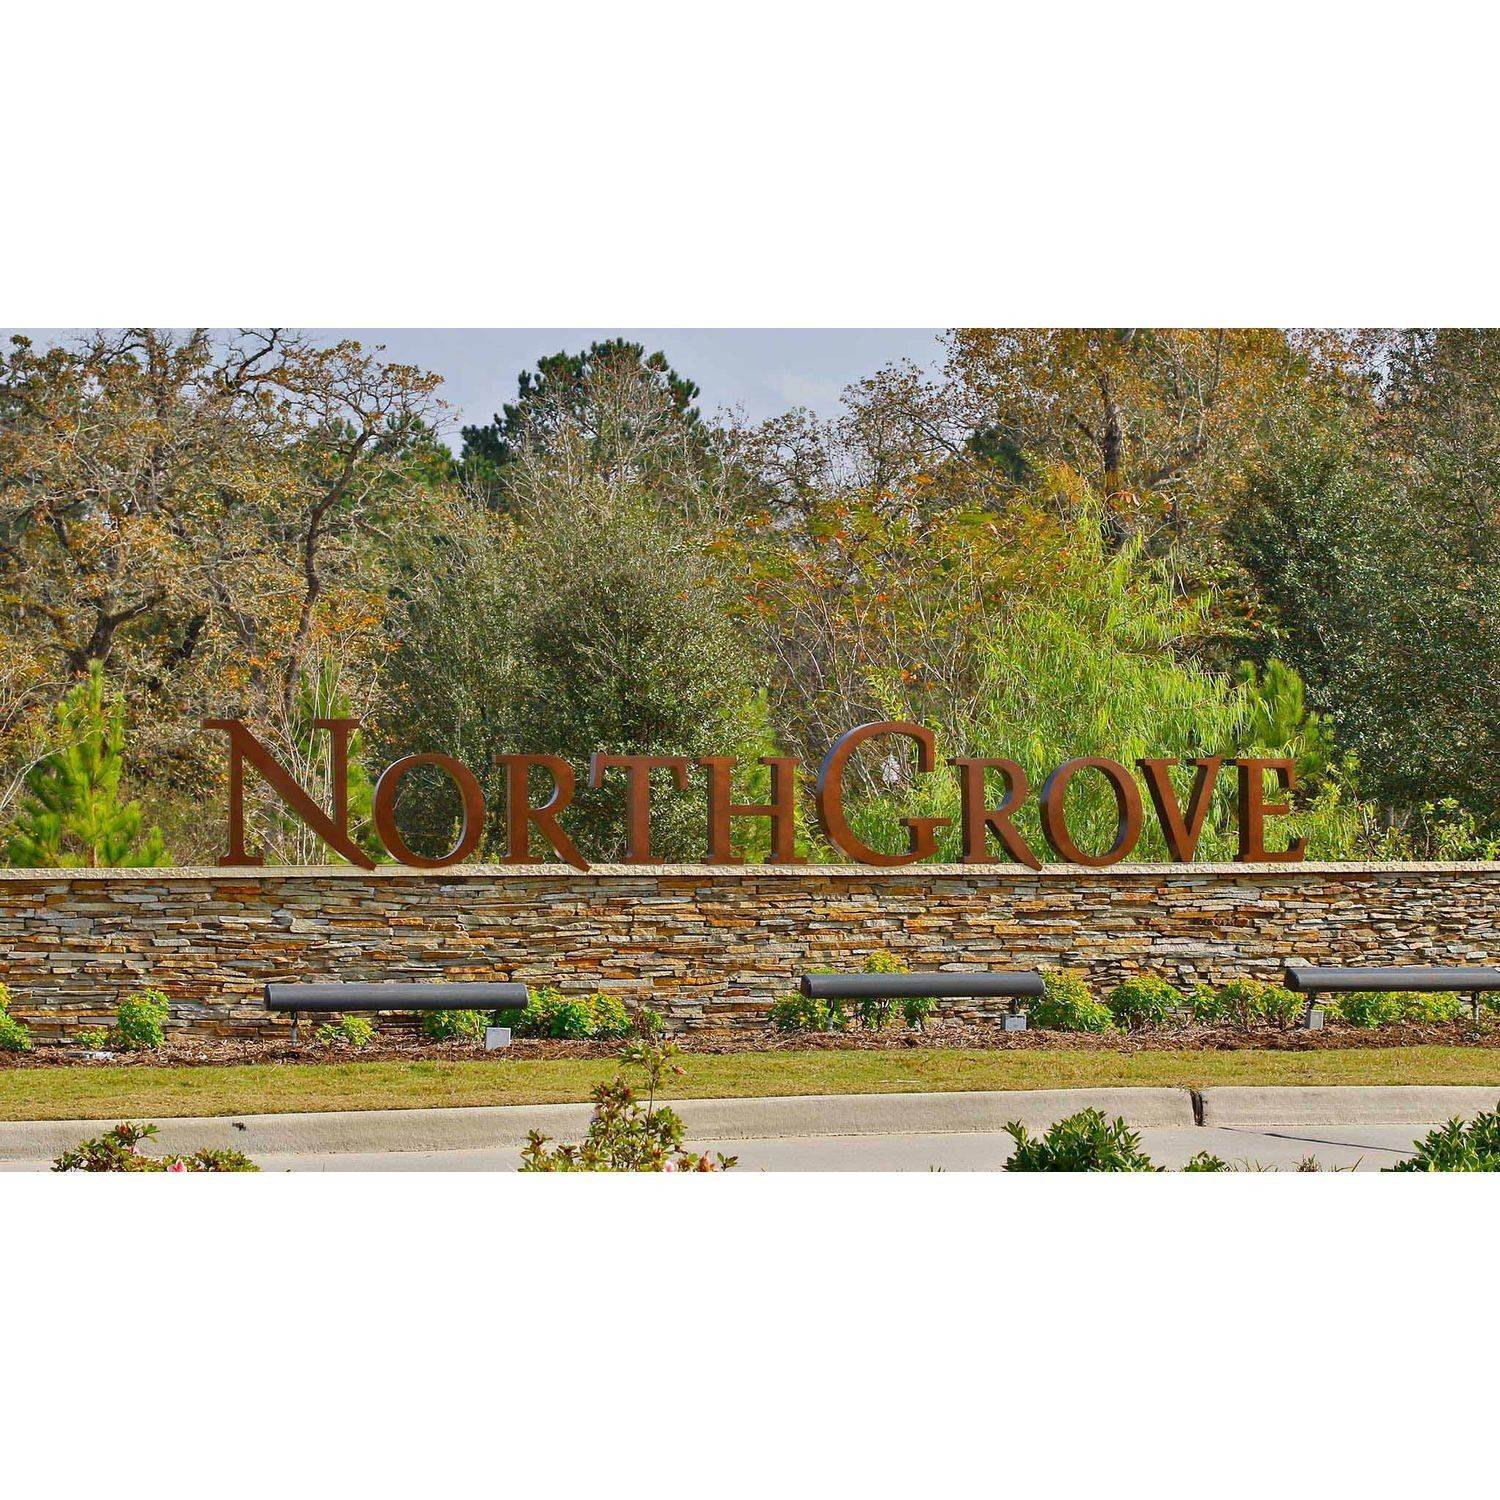 NorthGrove 50' здание в 7385 Grandview Meadow Drive, Magnolia, TX 77354